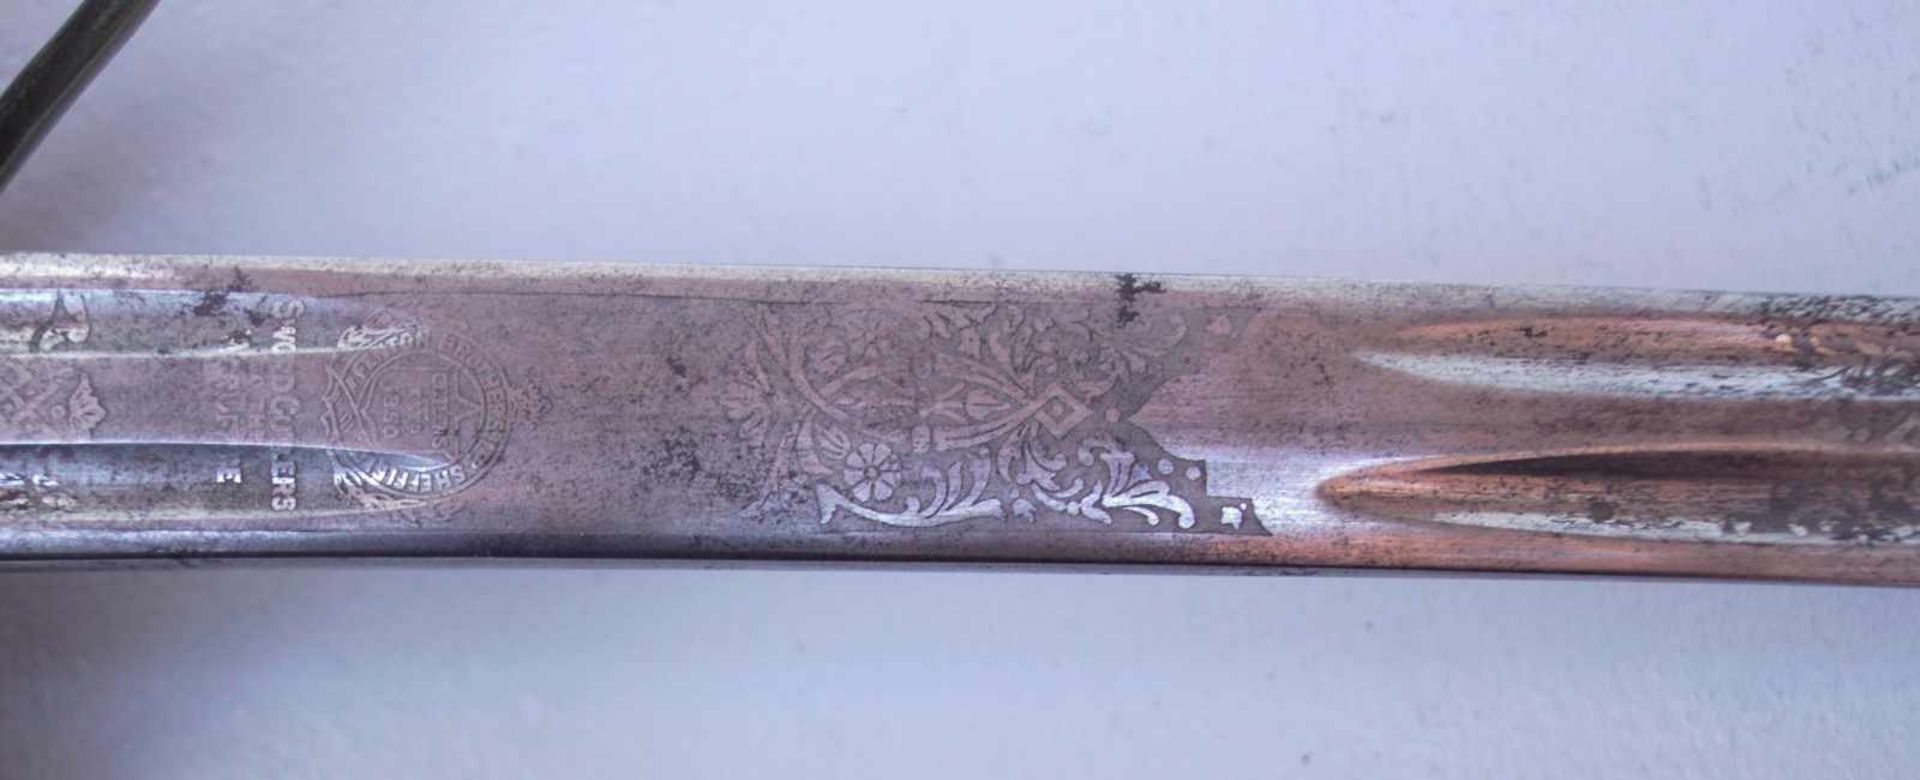 Schottischer Offiziersäbelsäbel Highlander ab 1828Breite Klinge doppelseitig geätze und gebläute - Image 4 of 4